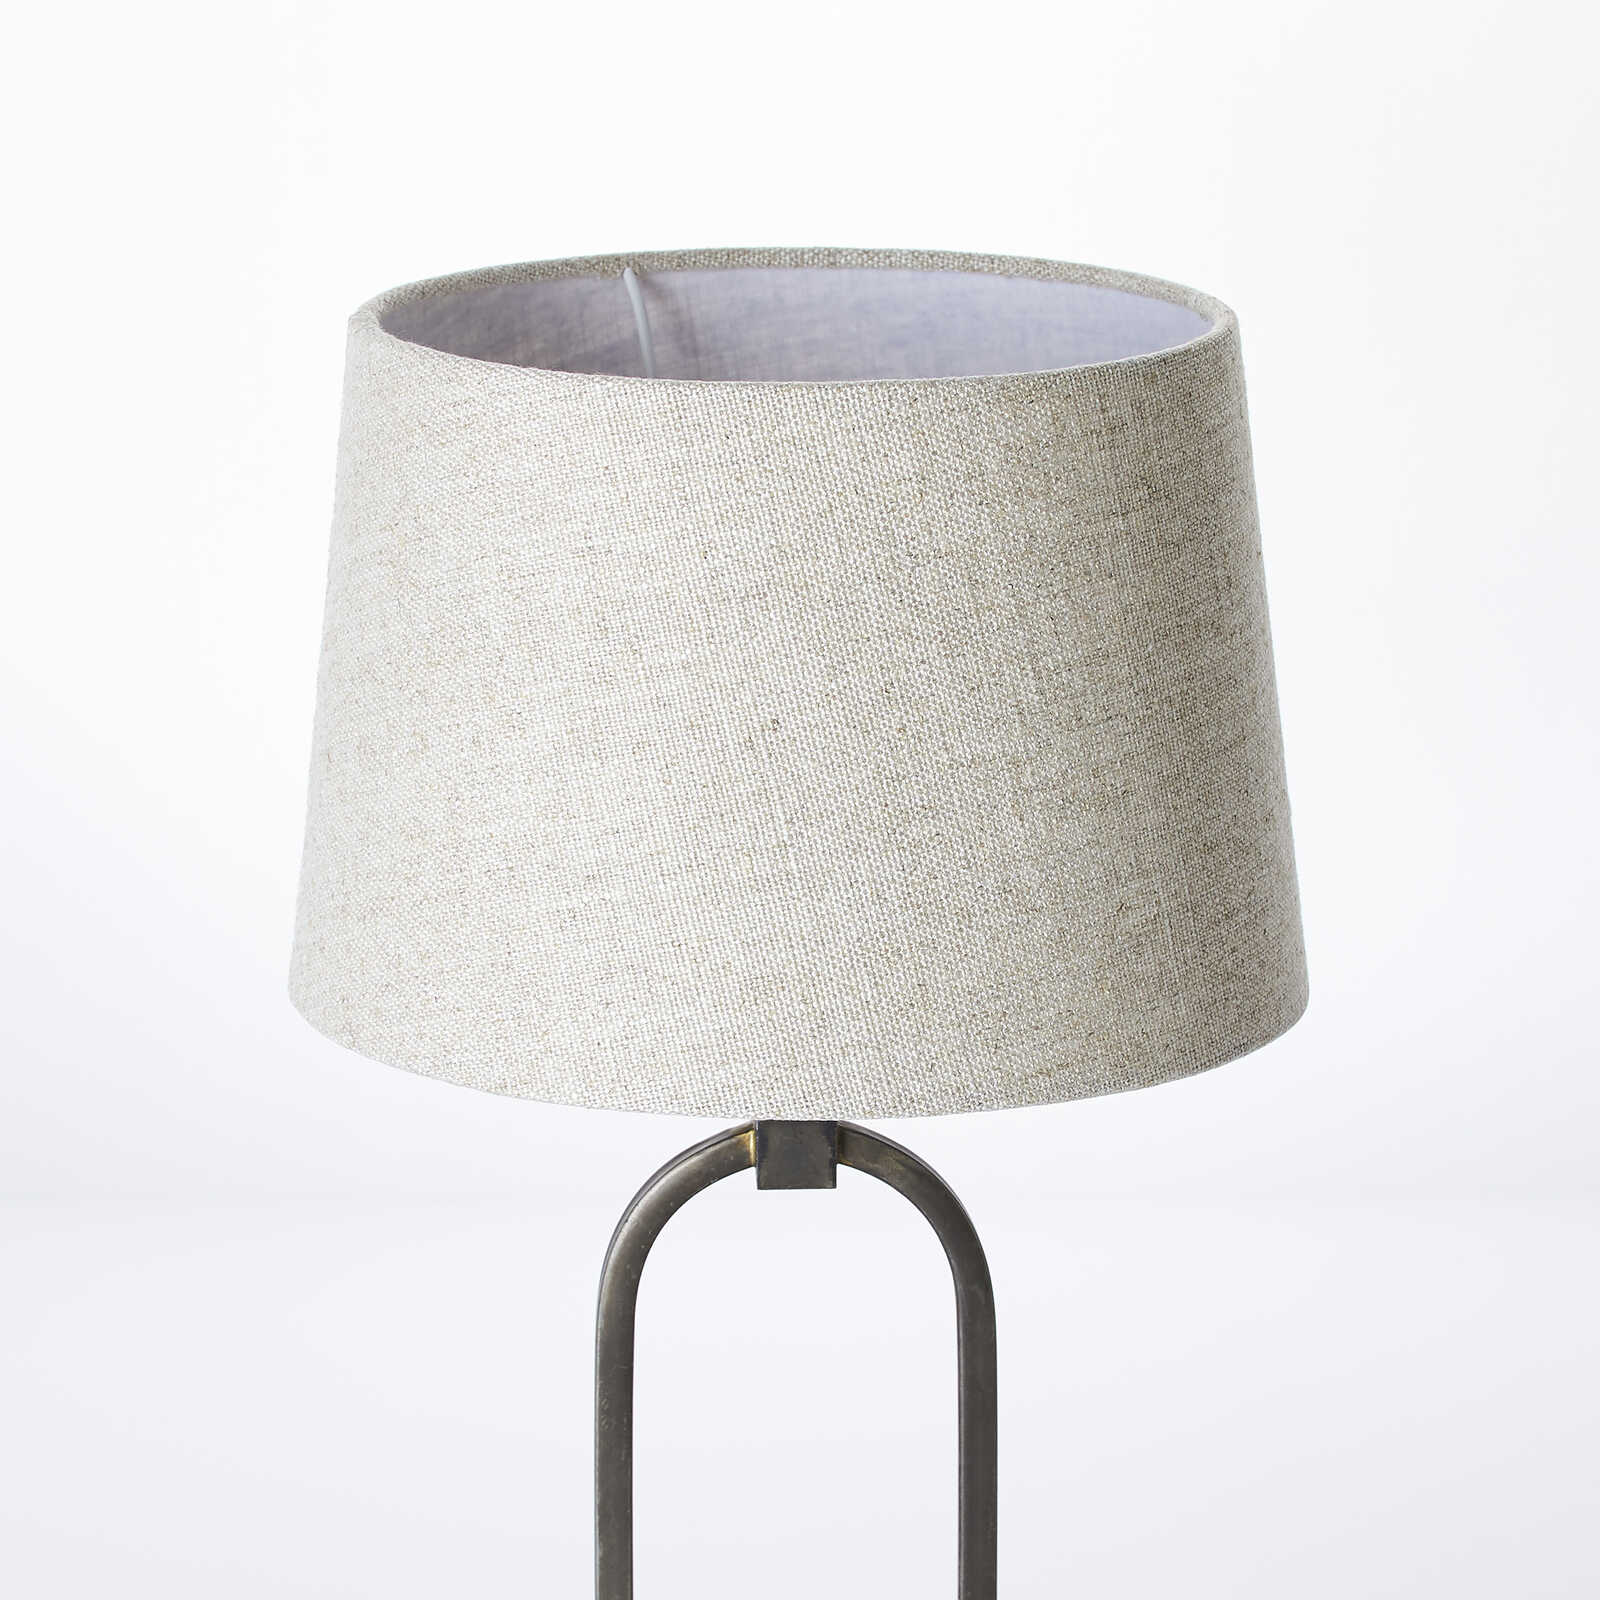             Textiel tafellamp - Ole 1 - Bruin
        